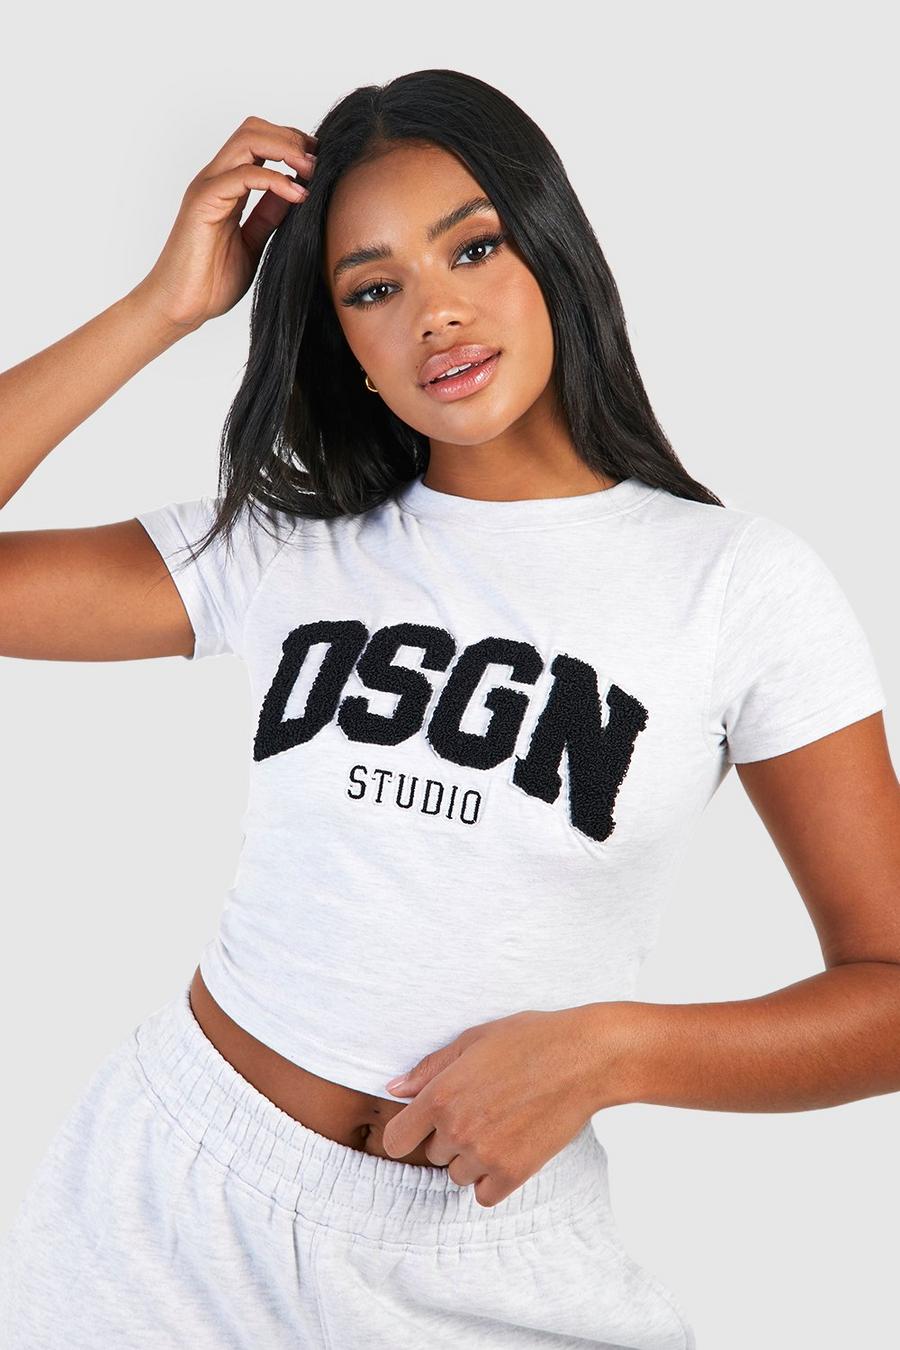 T-shirt sagomata Dsgn Studio in spugna con applique, Ash grey